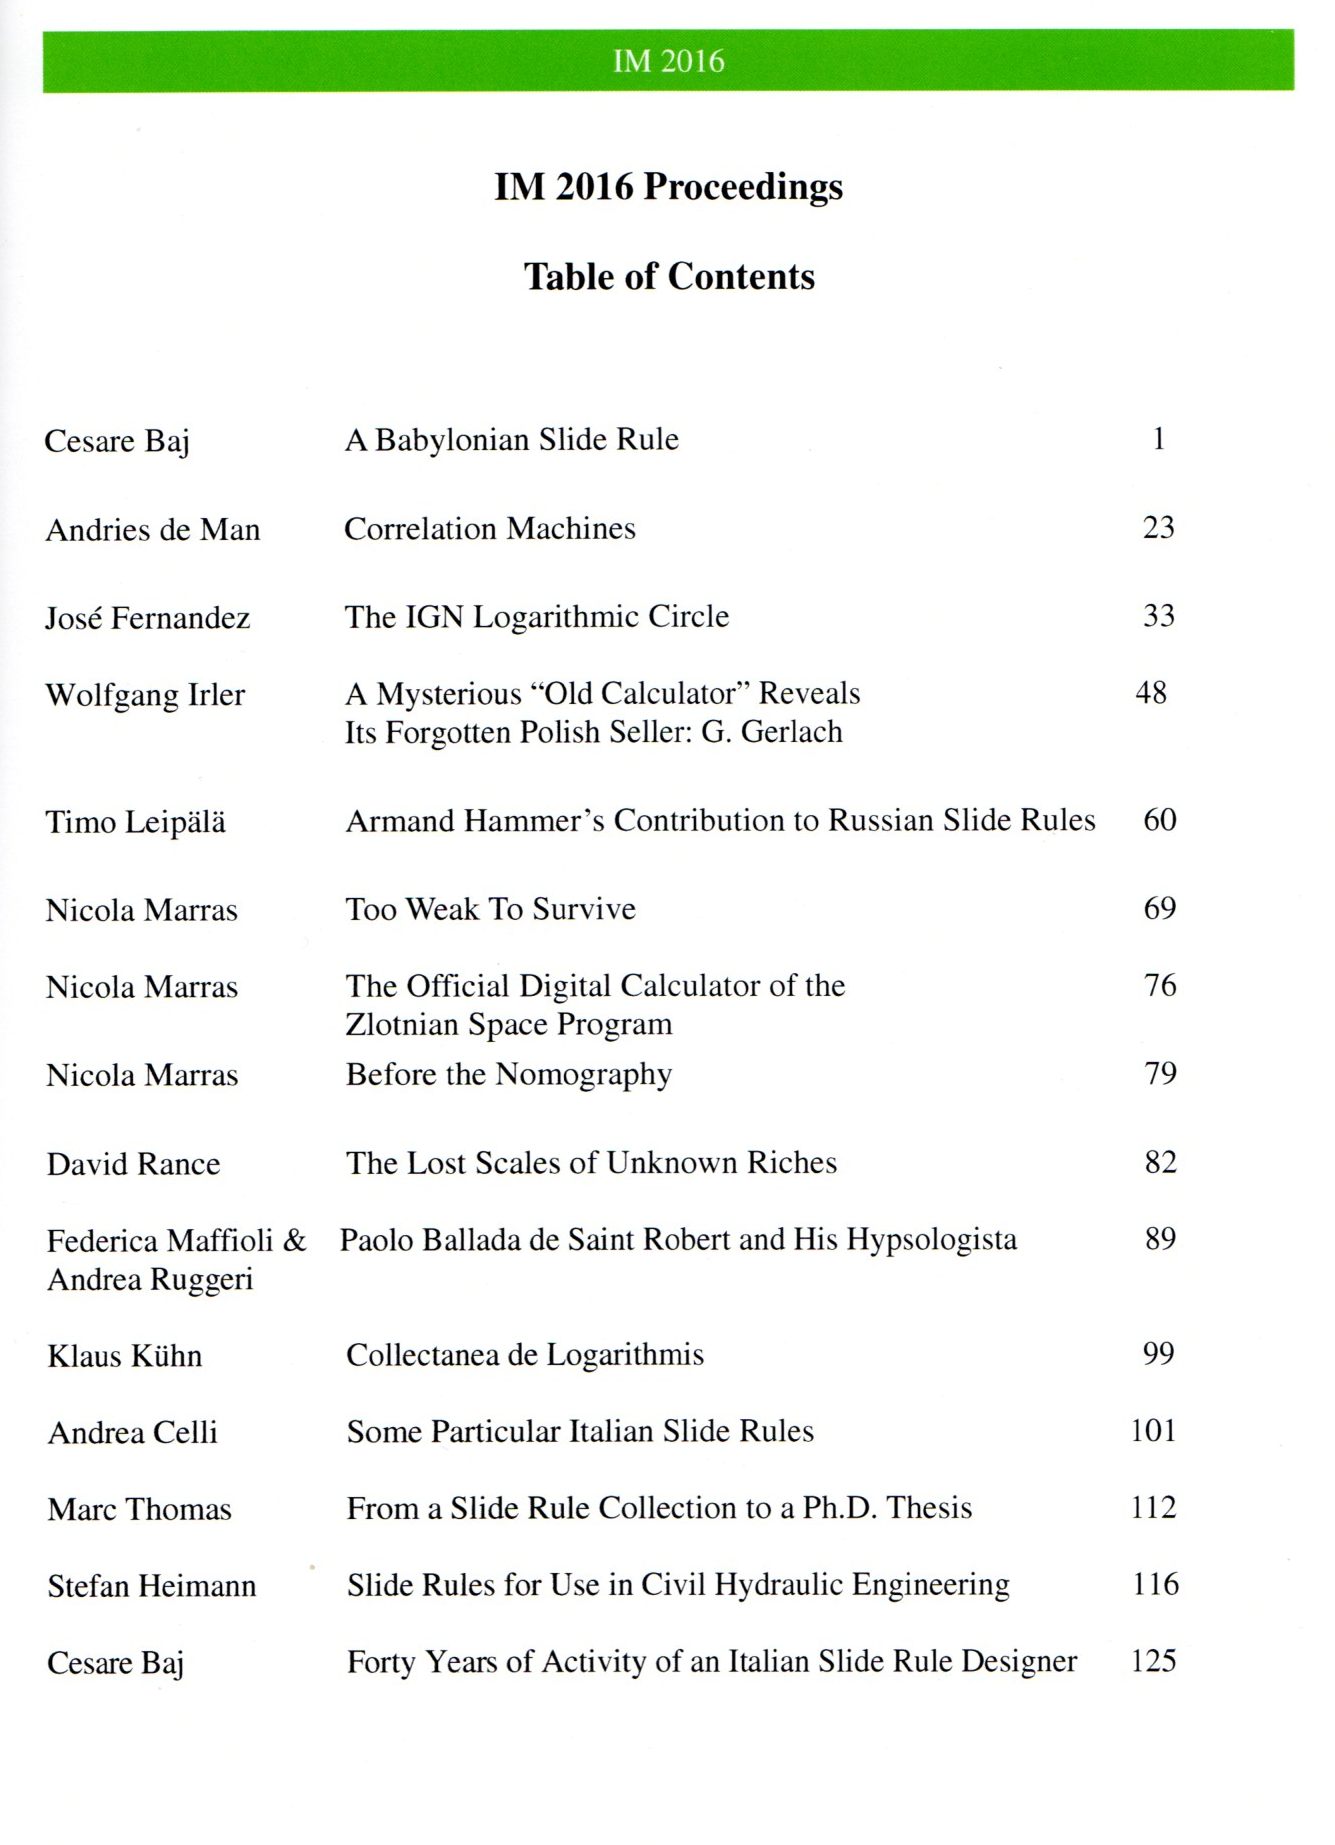 IM2016 Proceedings contents